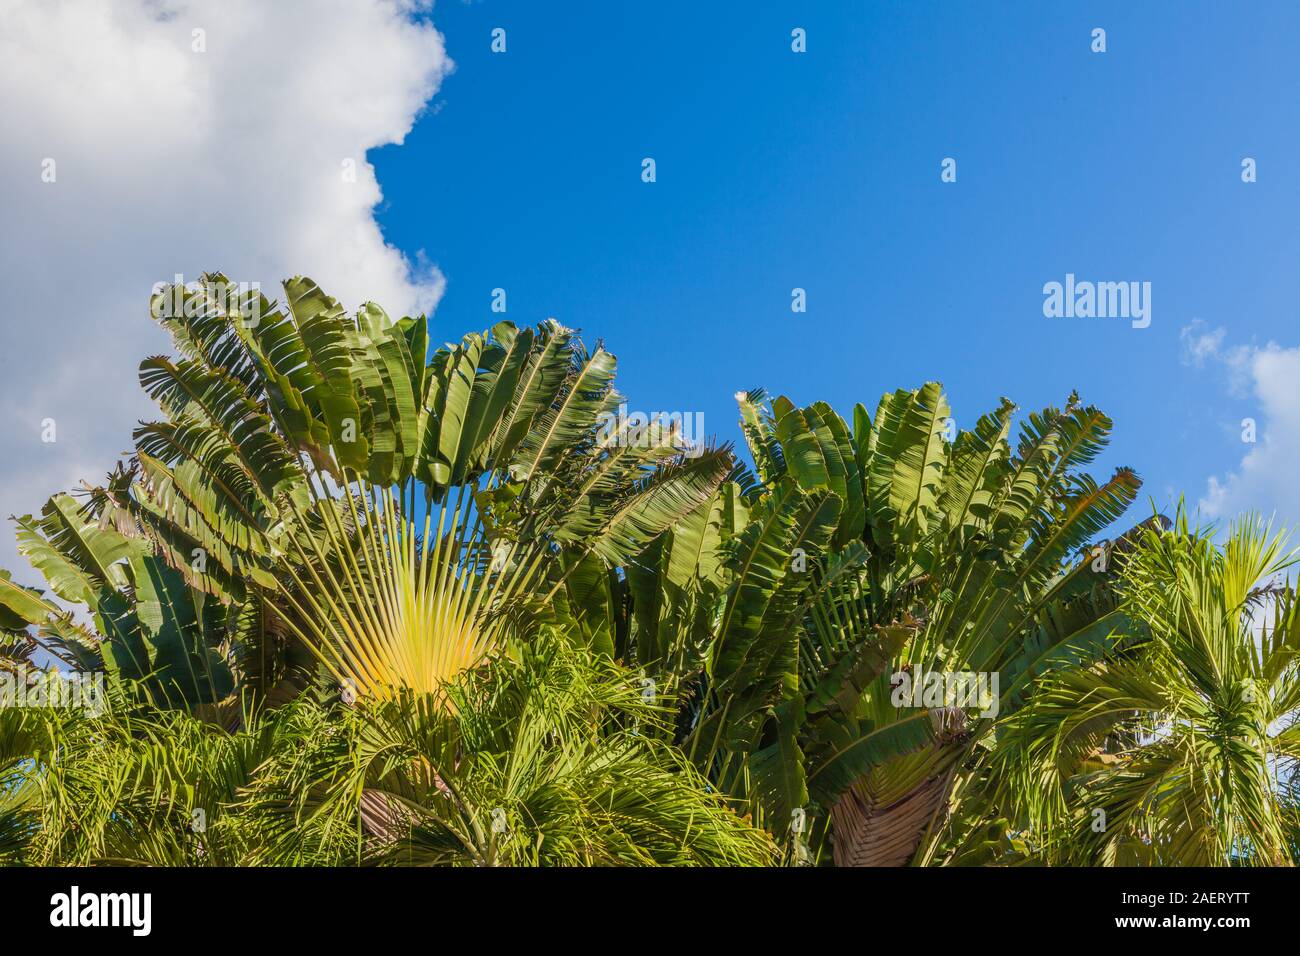 Ein Beispiel für das üppige Wachstum im Dschungel der Yucatan Halbinsel von Mexiko zu finden. Stockfoto